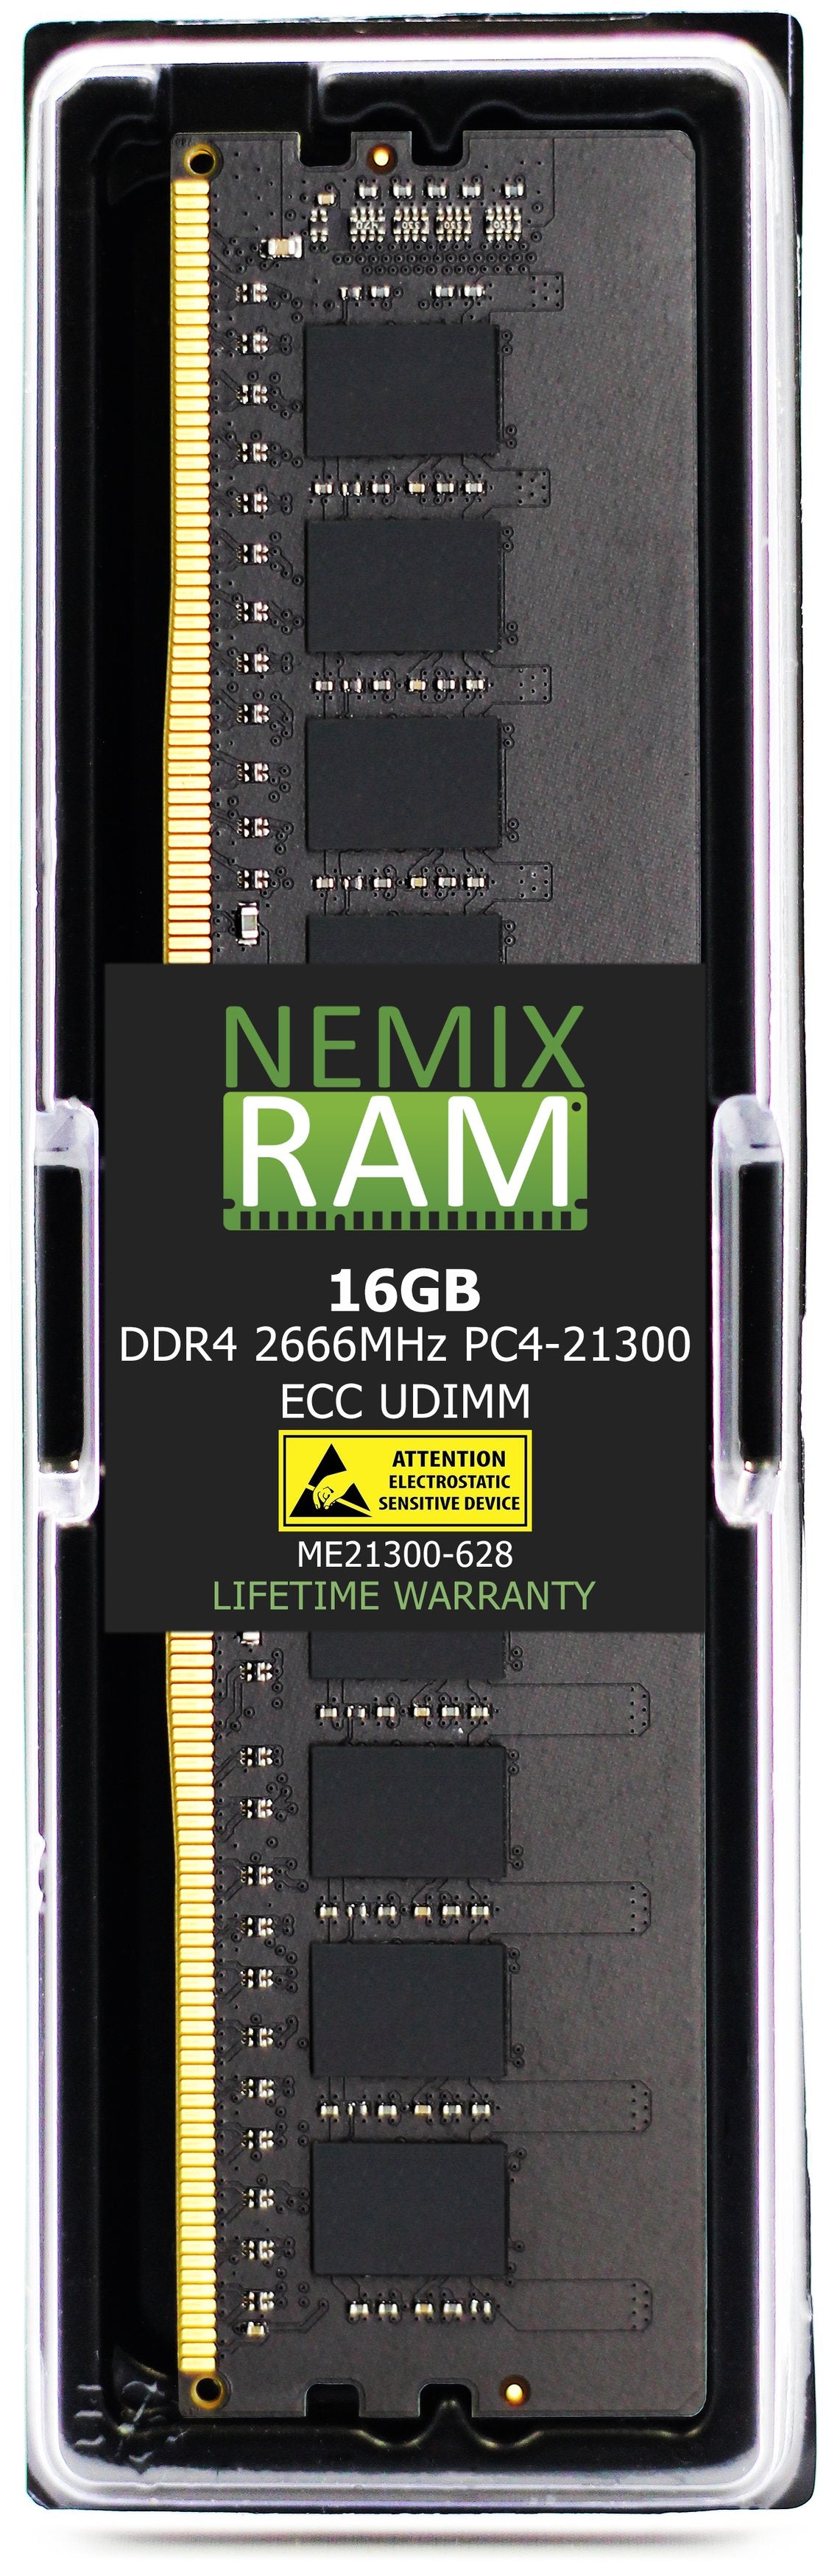 16GB DDR4 2666MHZ PC4-21300 VLP ECC UDIMM Compatible with Supermicro MEM-DR416L-CV01-EU26